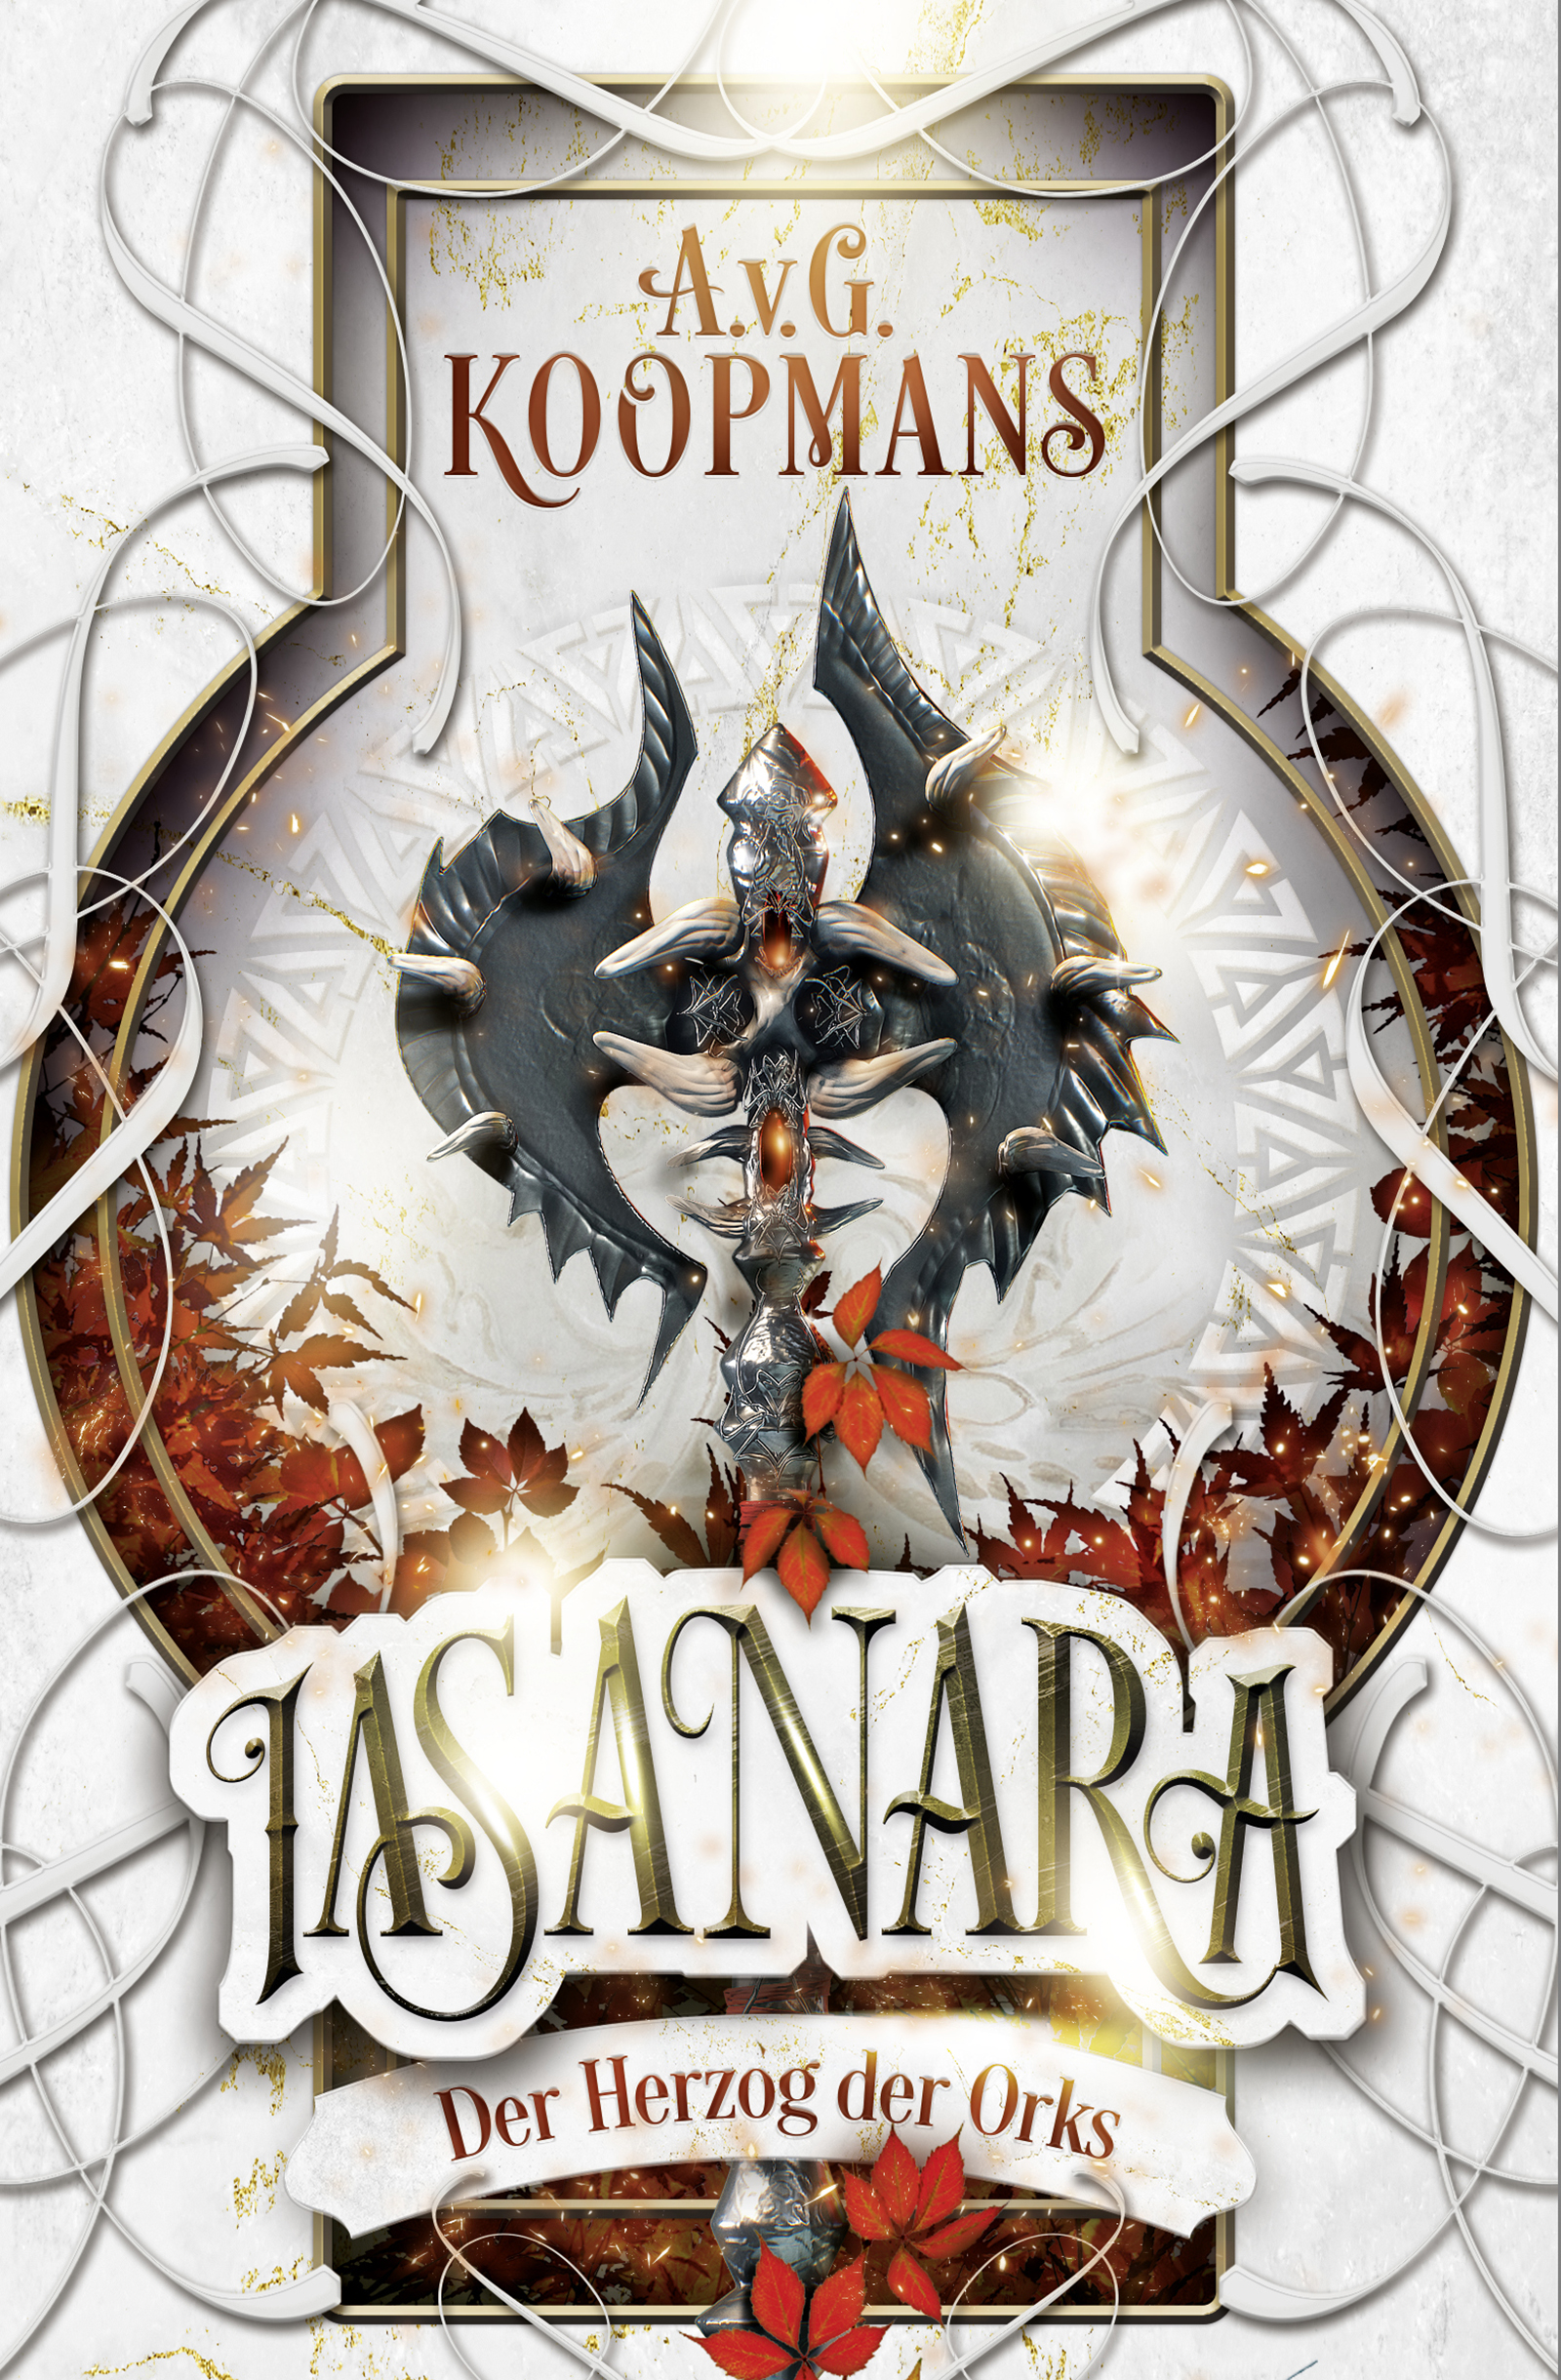 Iasanara – Der Herzog der Orks